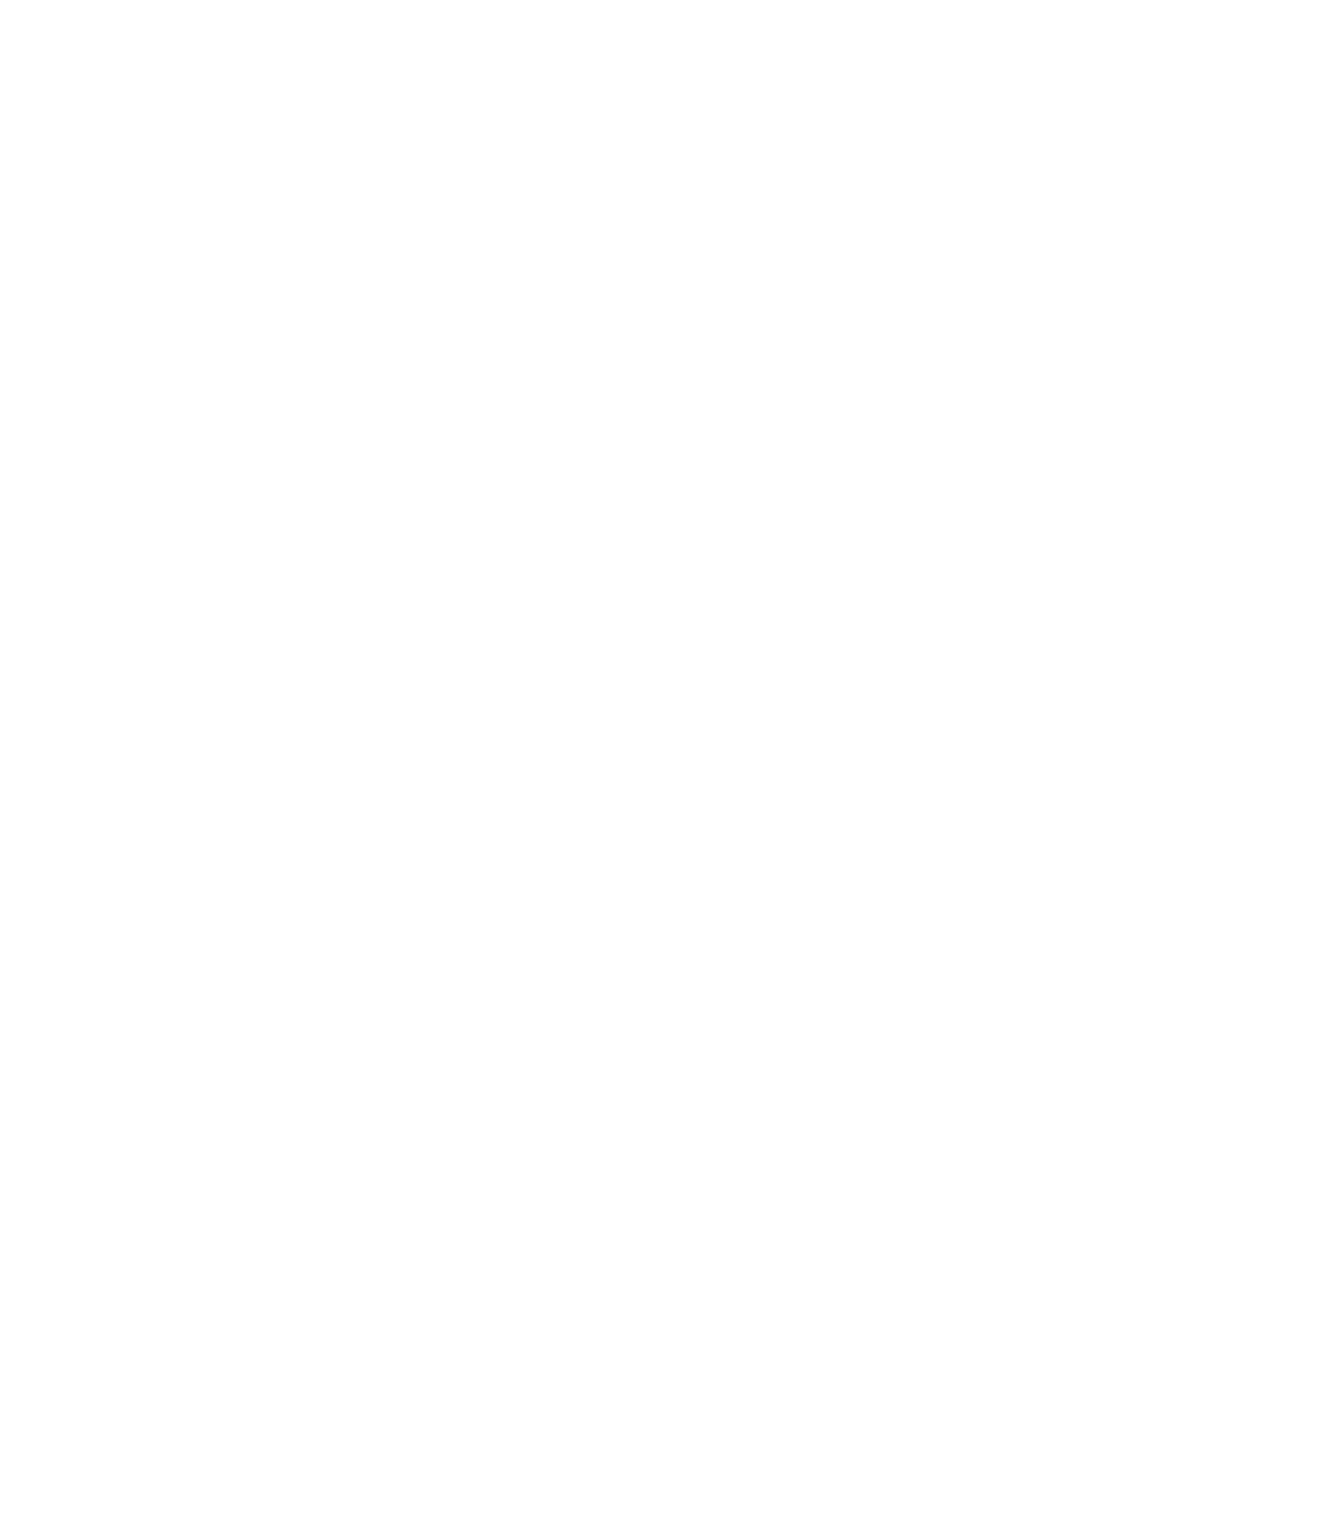 Sanlam logo for dark backgrounds (transparent PNG)